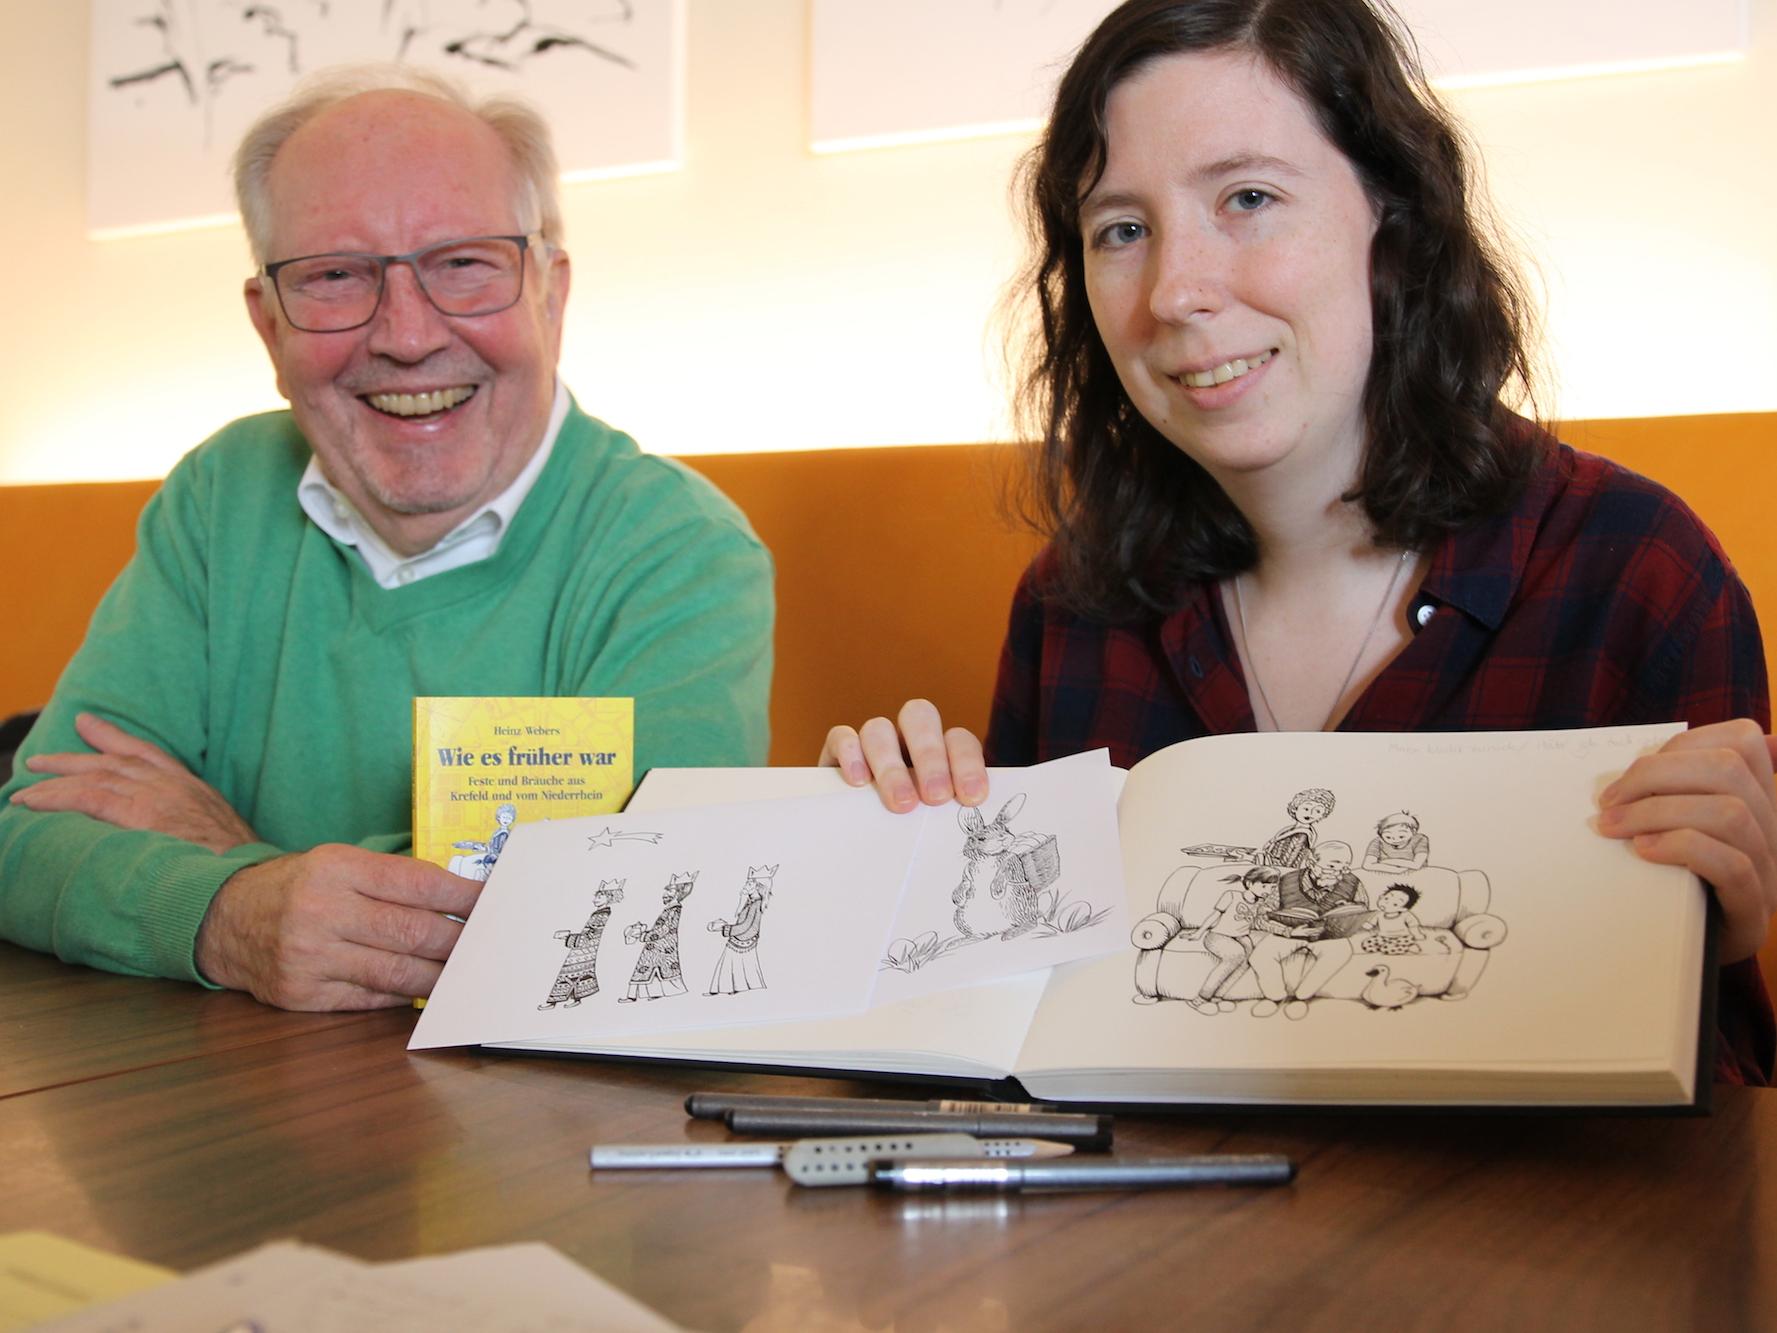 Ein gutes Team: Zu Heinz Webers’ Geschichten zu Bräuchen und Festen entwarf Susanna Welzel die liebevoll gestalteten Zeichnungen.